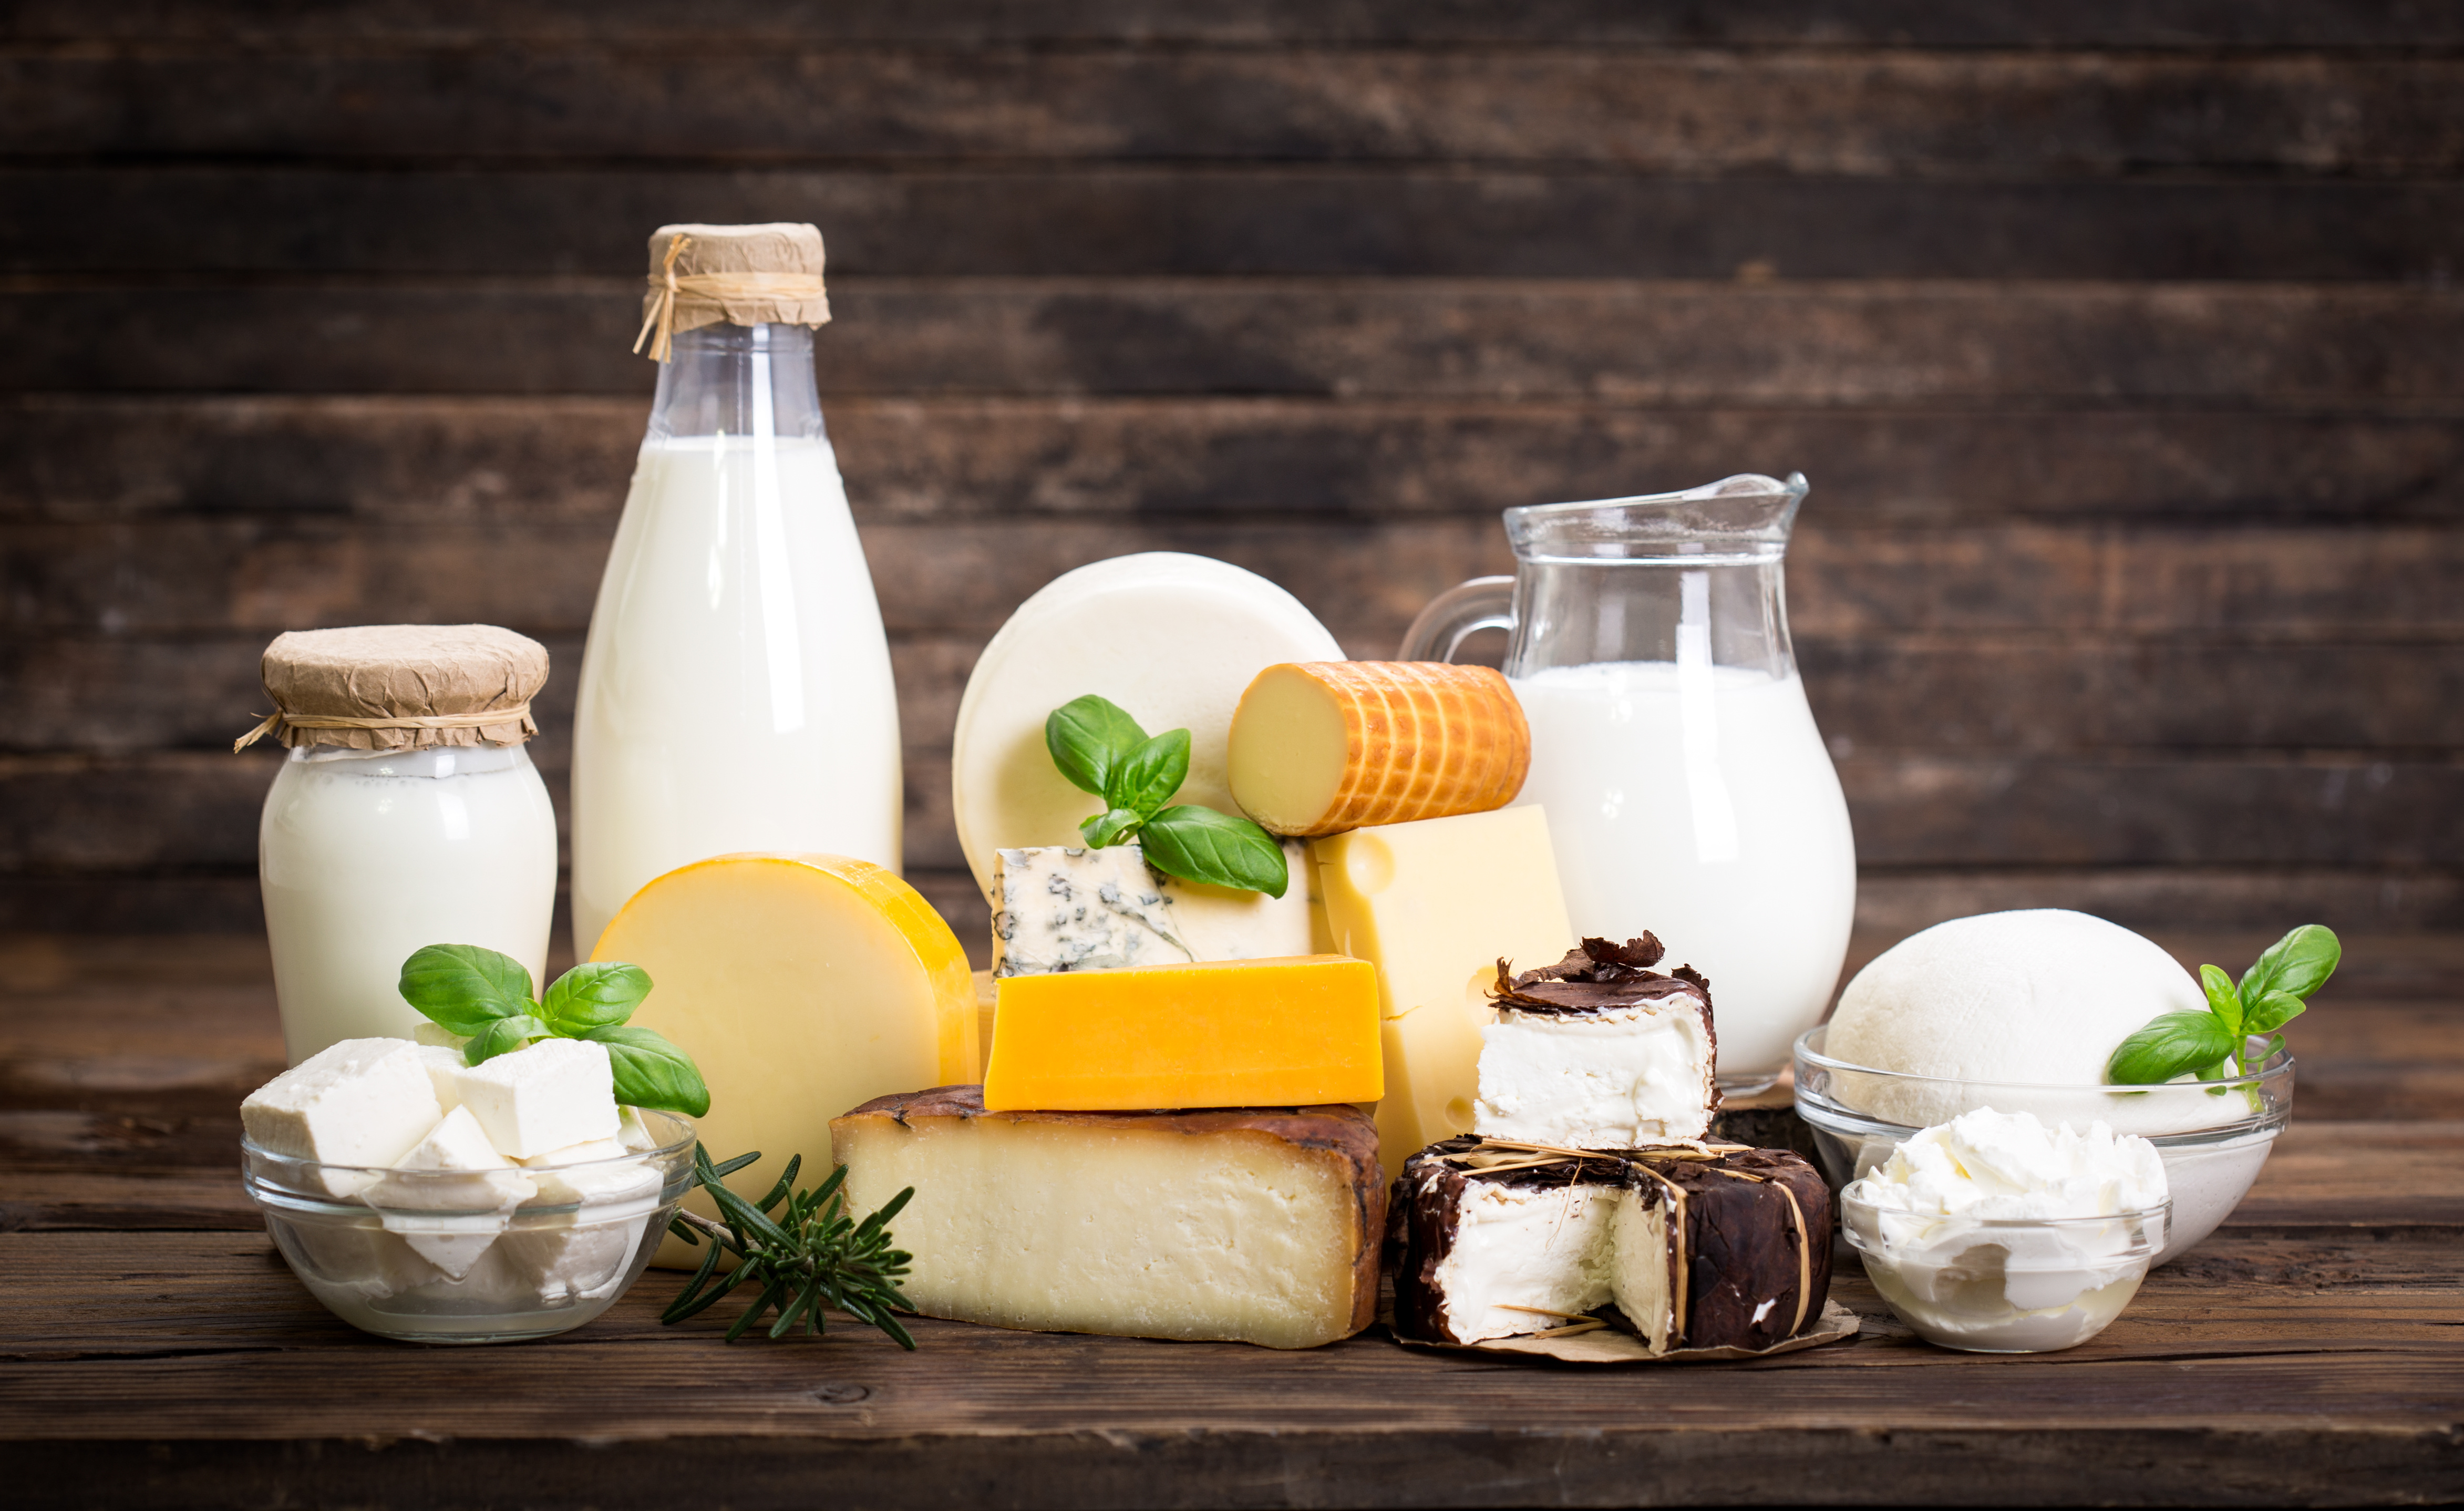 La consommation de produits laitiers est neutre pour la santé. © pilipphoto, Adobe Stock